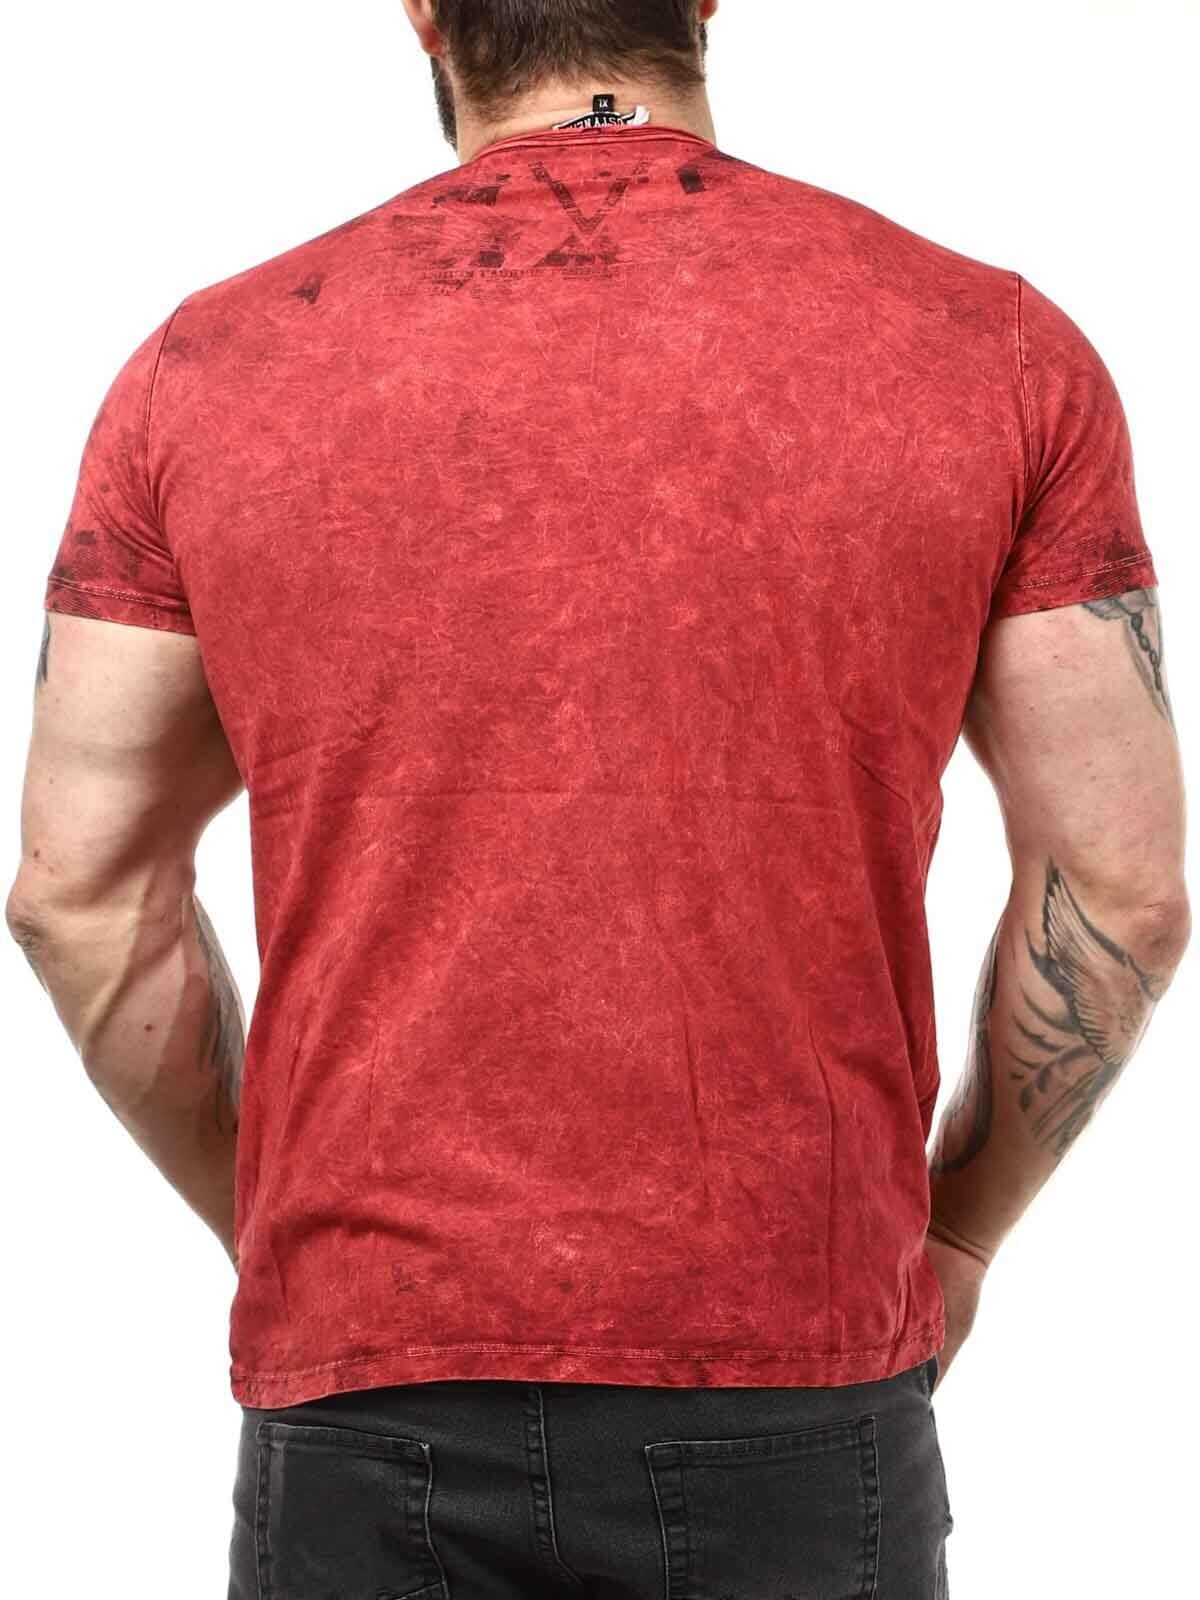 Hoist Sails T-shirt - Czerwony